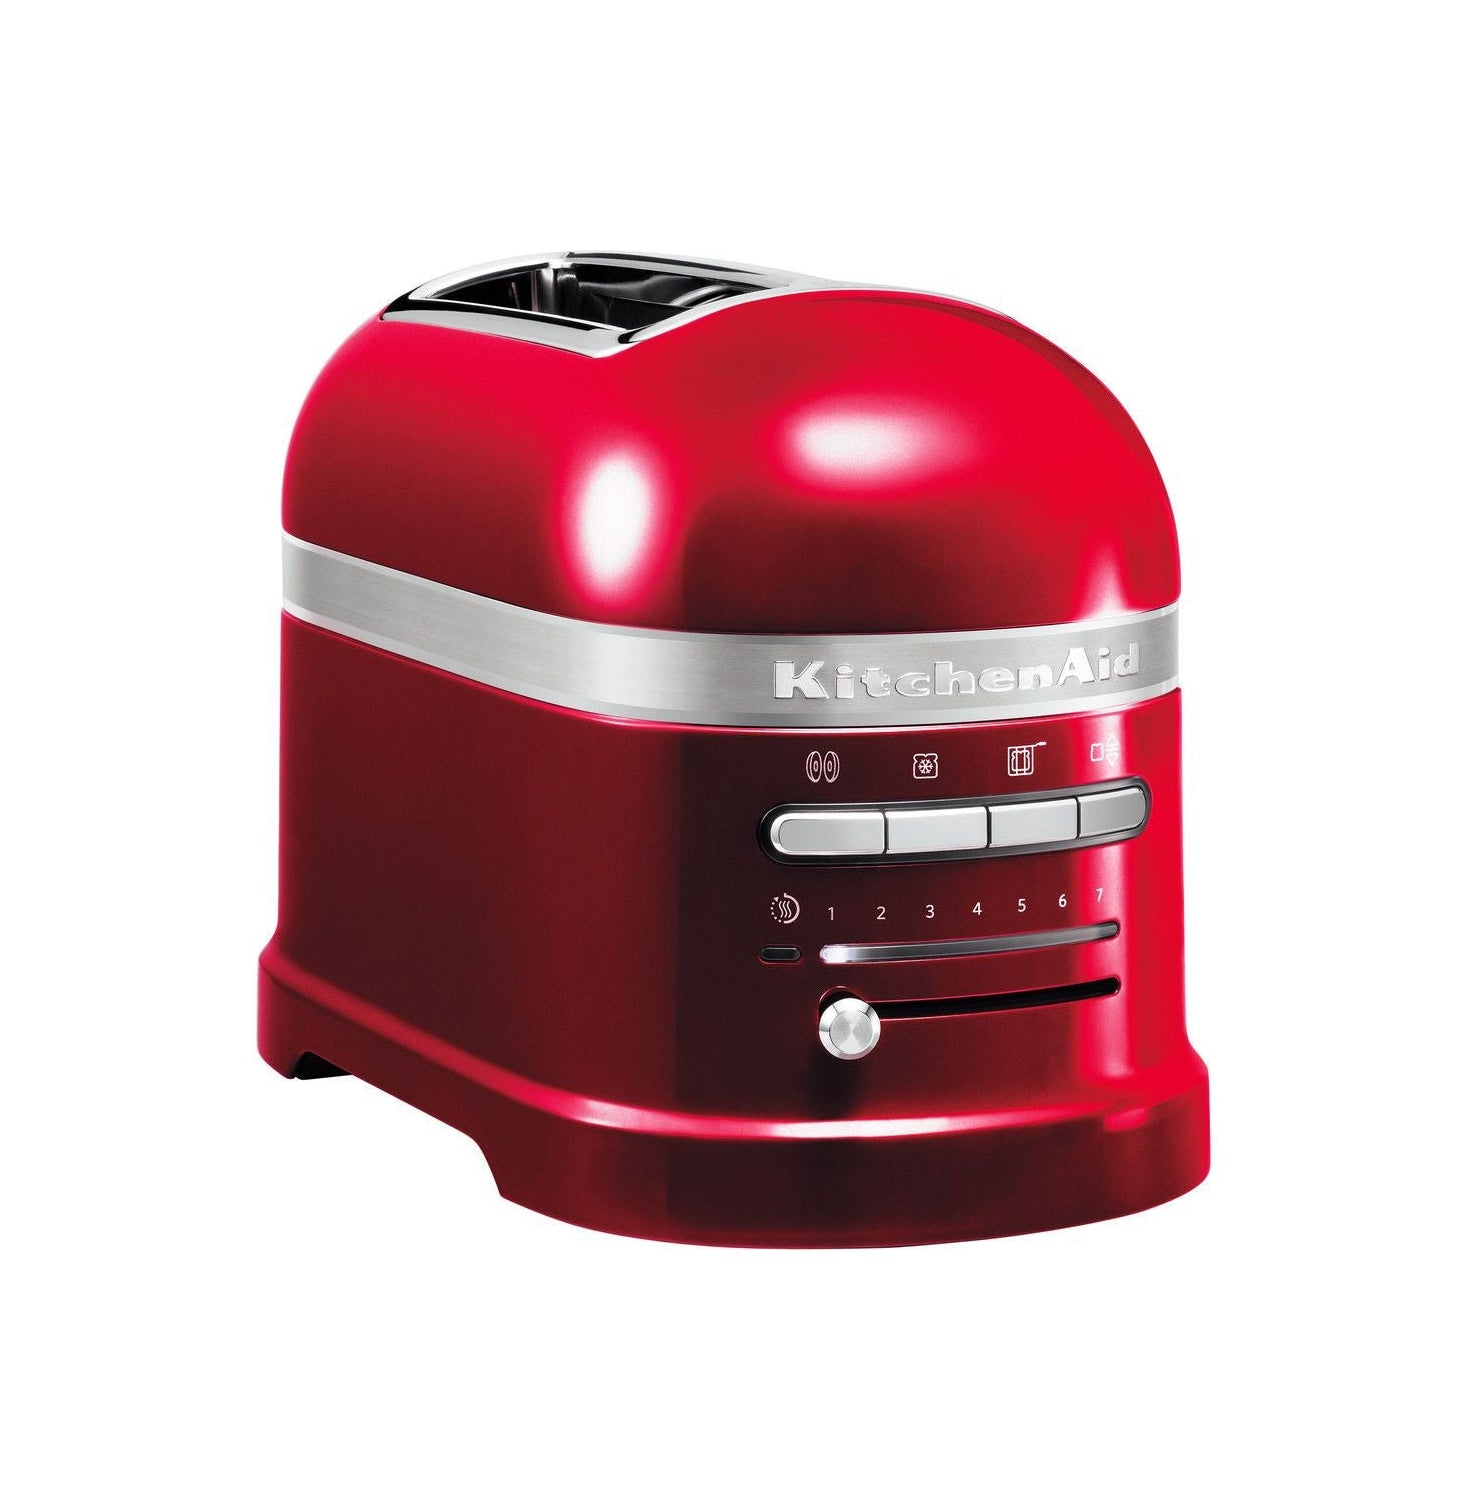 Küchenhilfe 5 kmt2204 Artisan Toaster für 2 Scheiben, liebe Apple Red